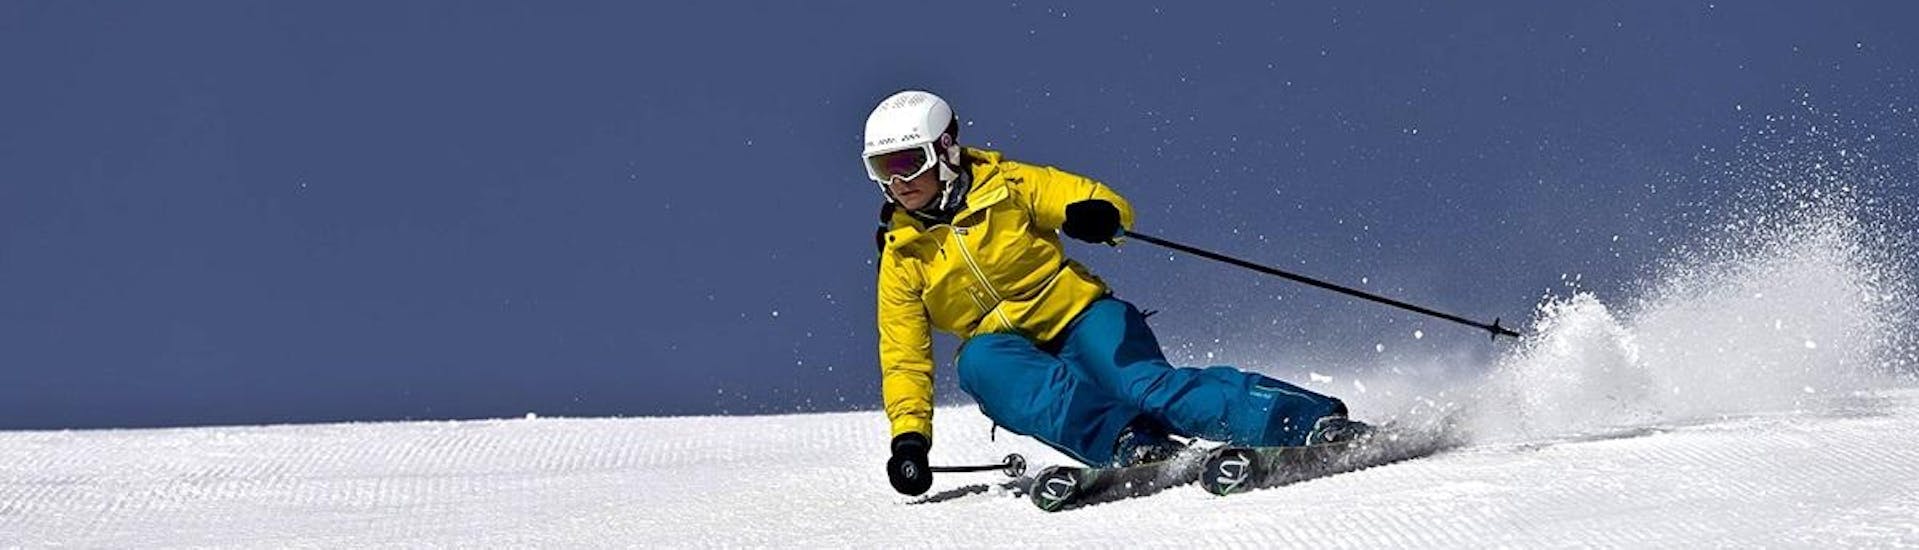 Privater Skikurs für Erwachsene "Auffrischung" aller Levels .